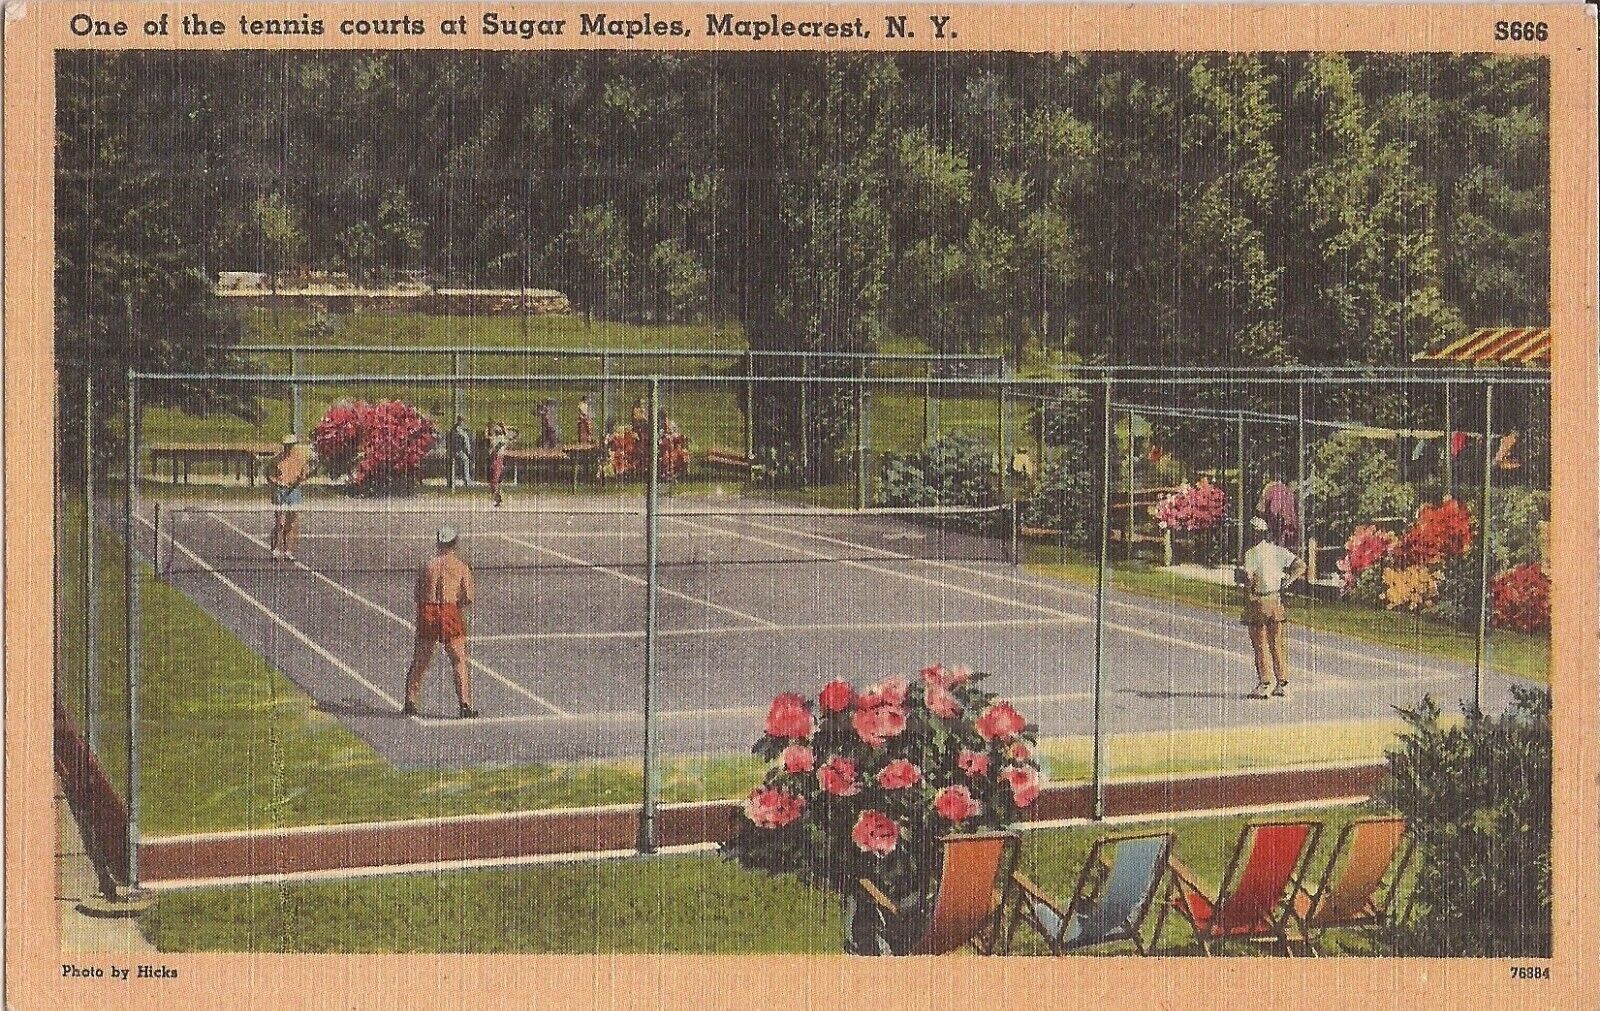 Maplecrest, NEW YORK - Sugar Maples - Tennis Courts - 1950